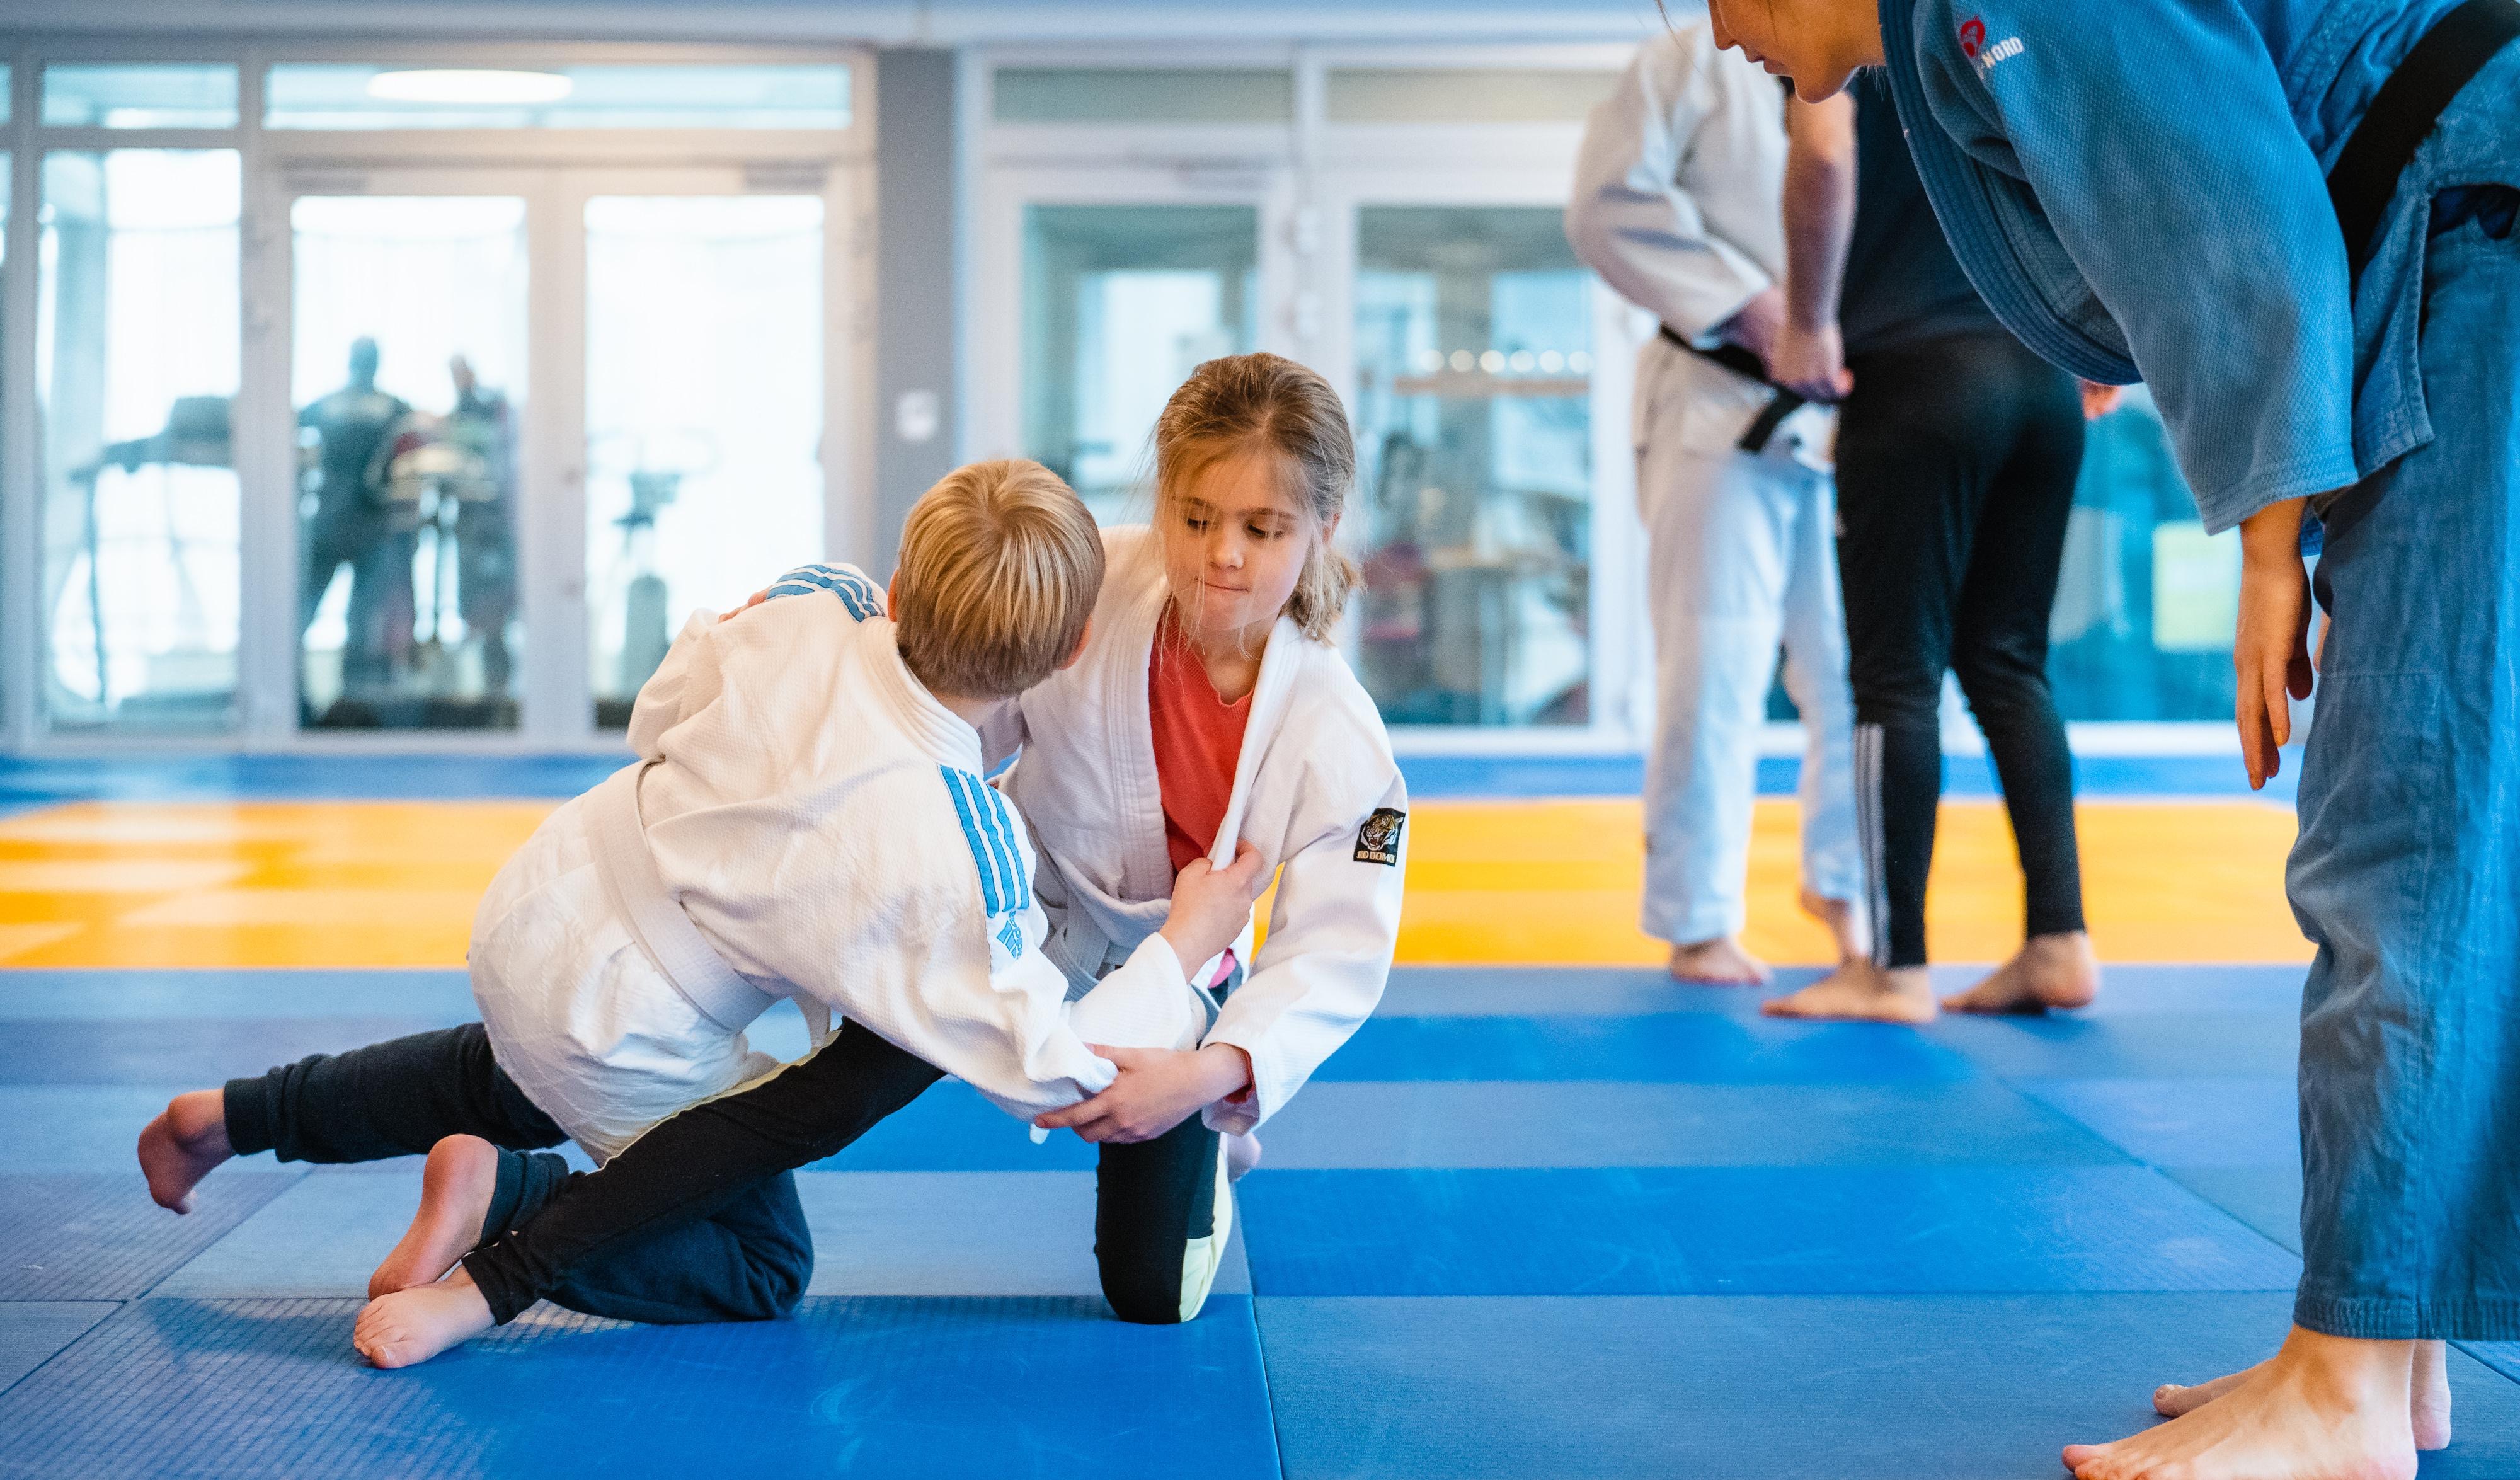 Inomhusmiljö. Två barn på en judomatta, de håller om varandra i ett grepp. Båda har vita judodräkter. Intill barnen står en ledare och ger instruktioner och peppar. 